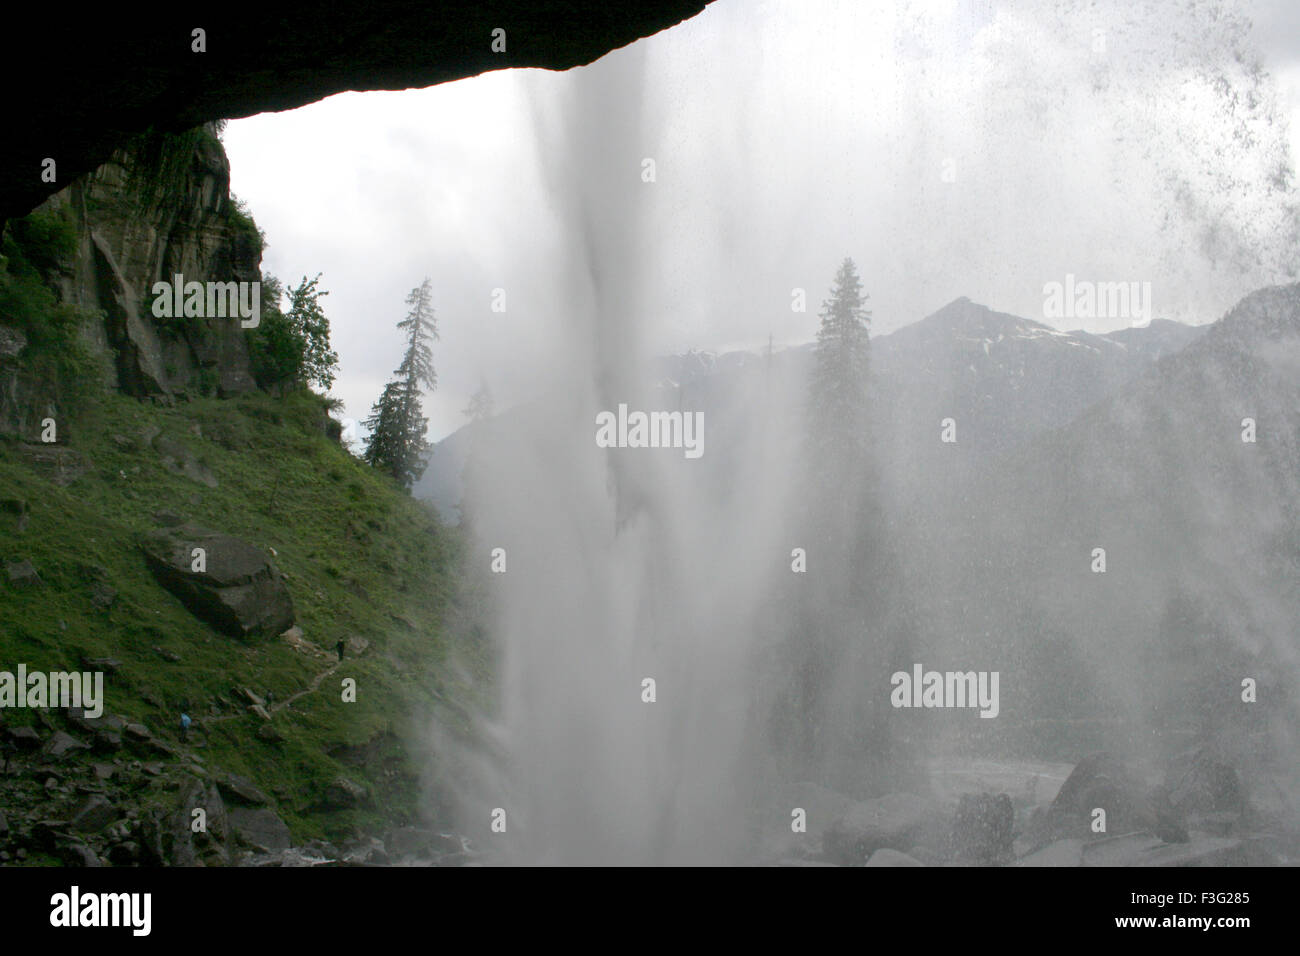 Jogini waterfall view from cave inset ; Nehru kund ; Manali ; Himachal Pradesh ; India Stock Photo